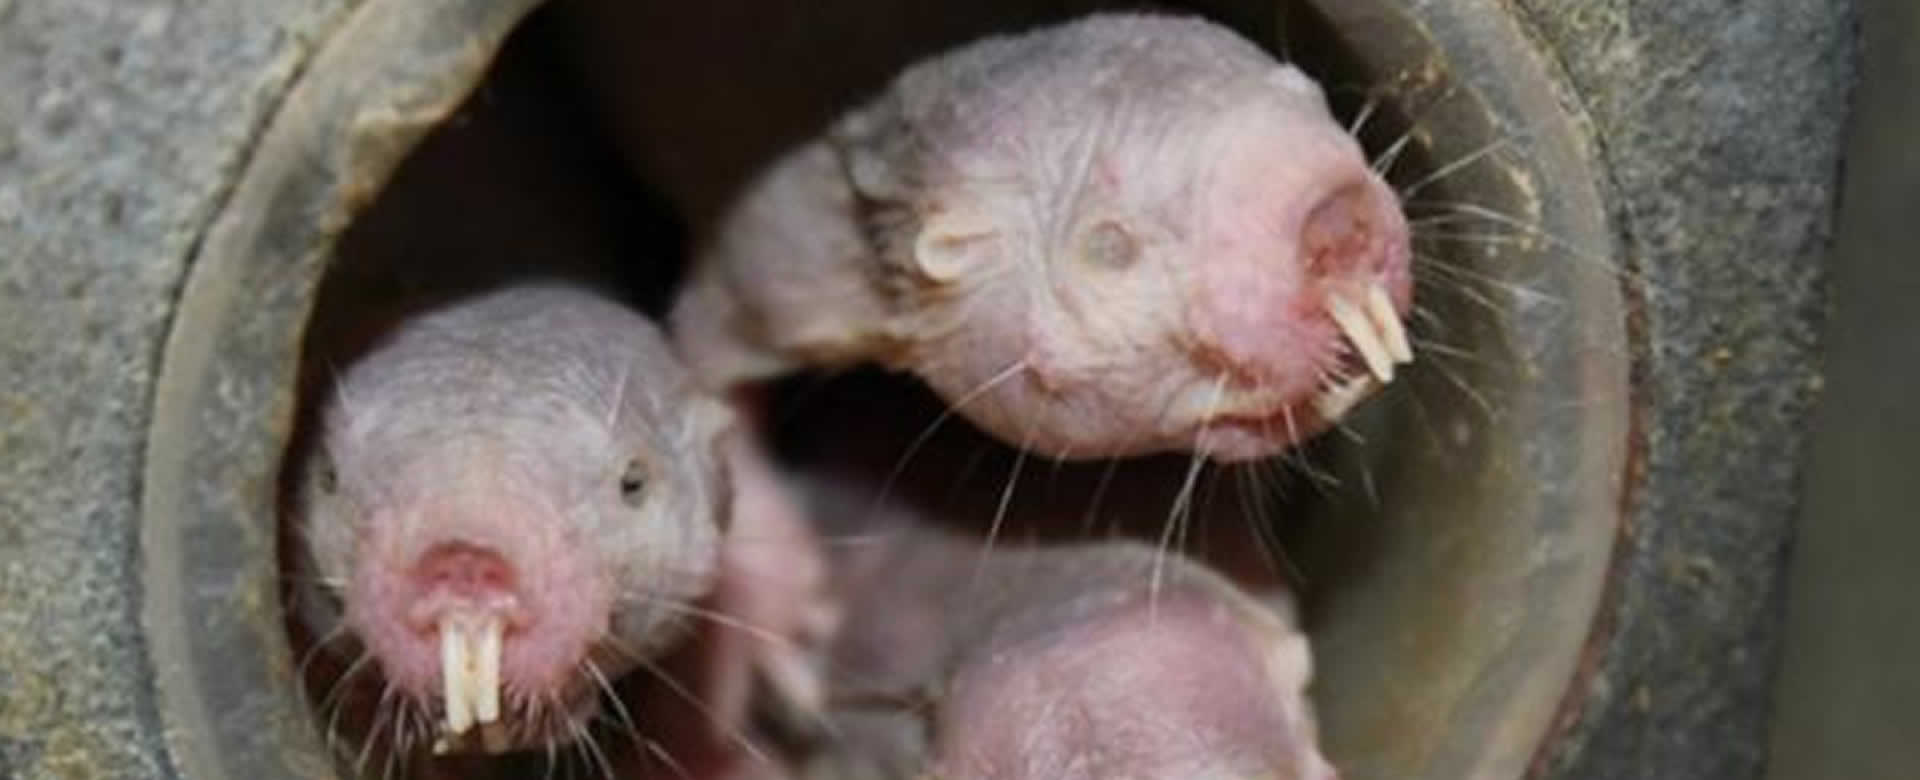 Ratas del tamaño de un gato afectan comercio al norte de Nueva Zelanda